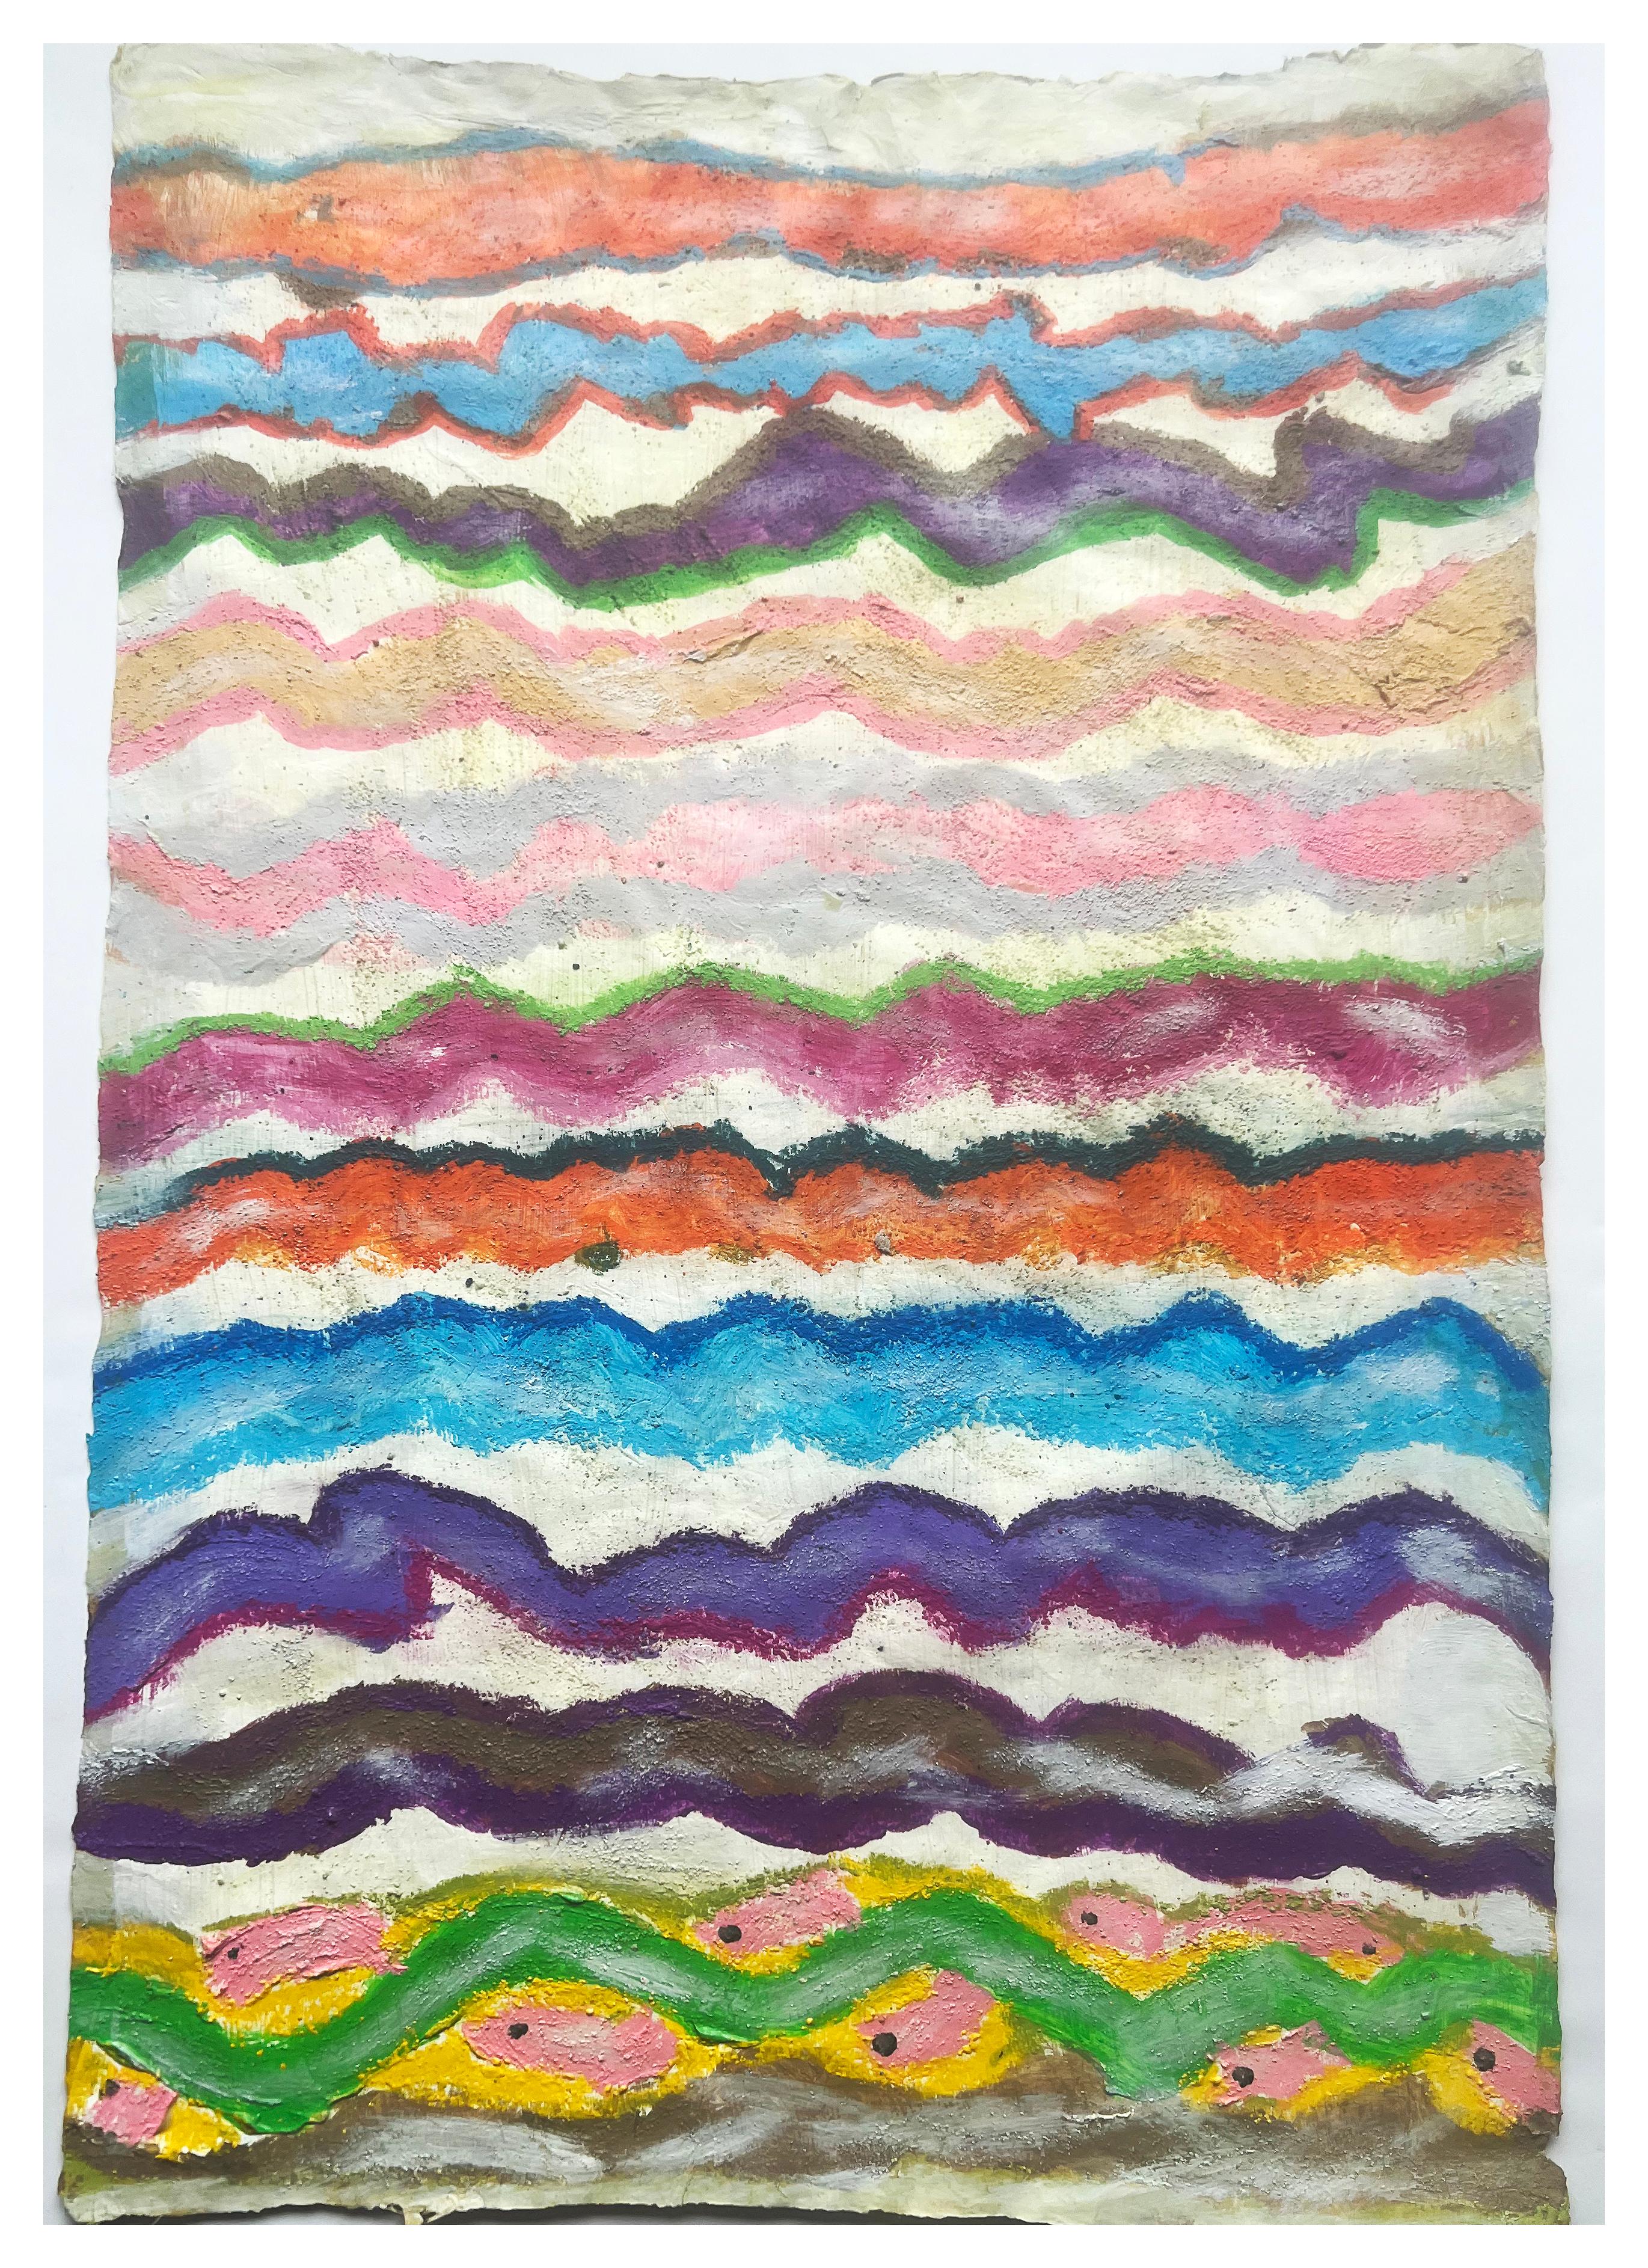 Fisch, farbenfrohe Mischtechnik-Kunst auf Washi-Papier